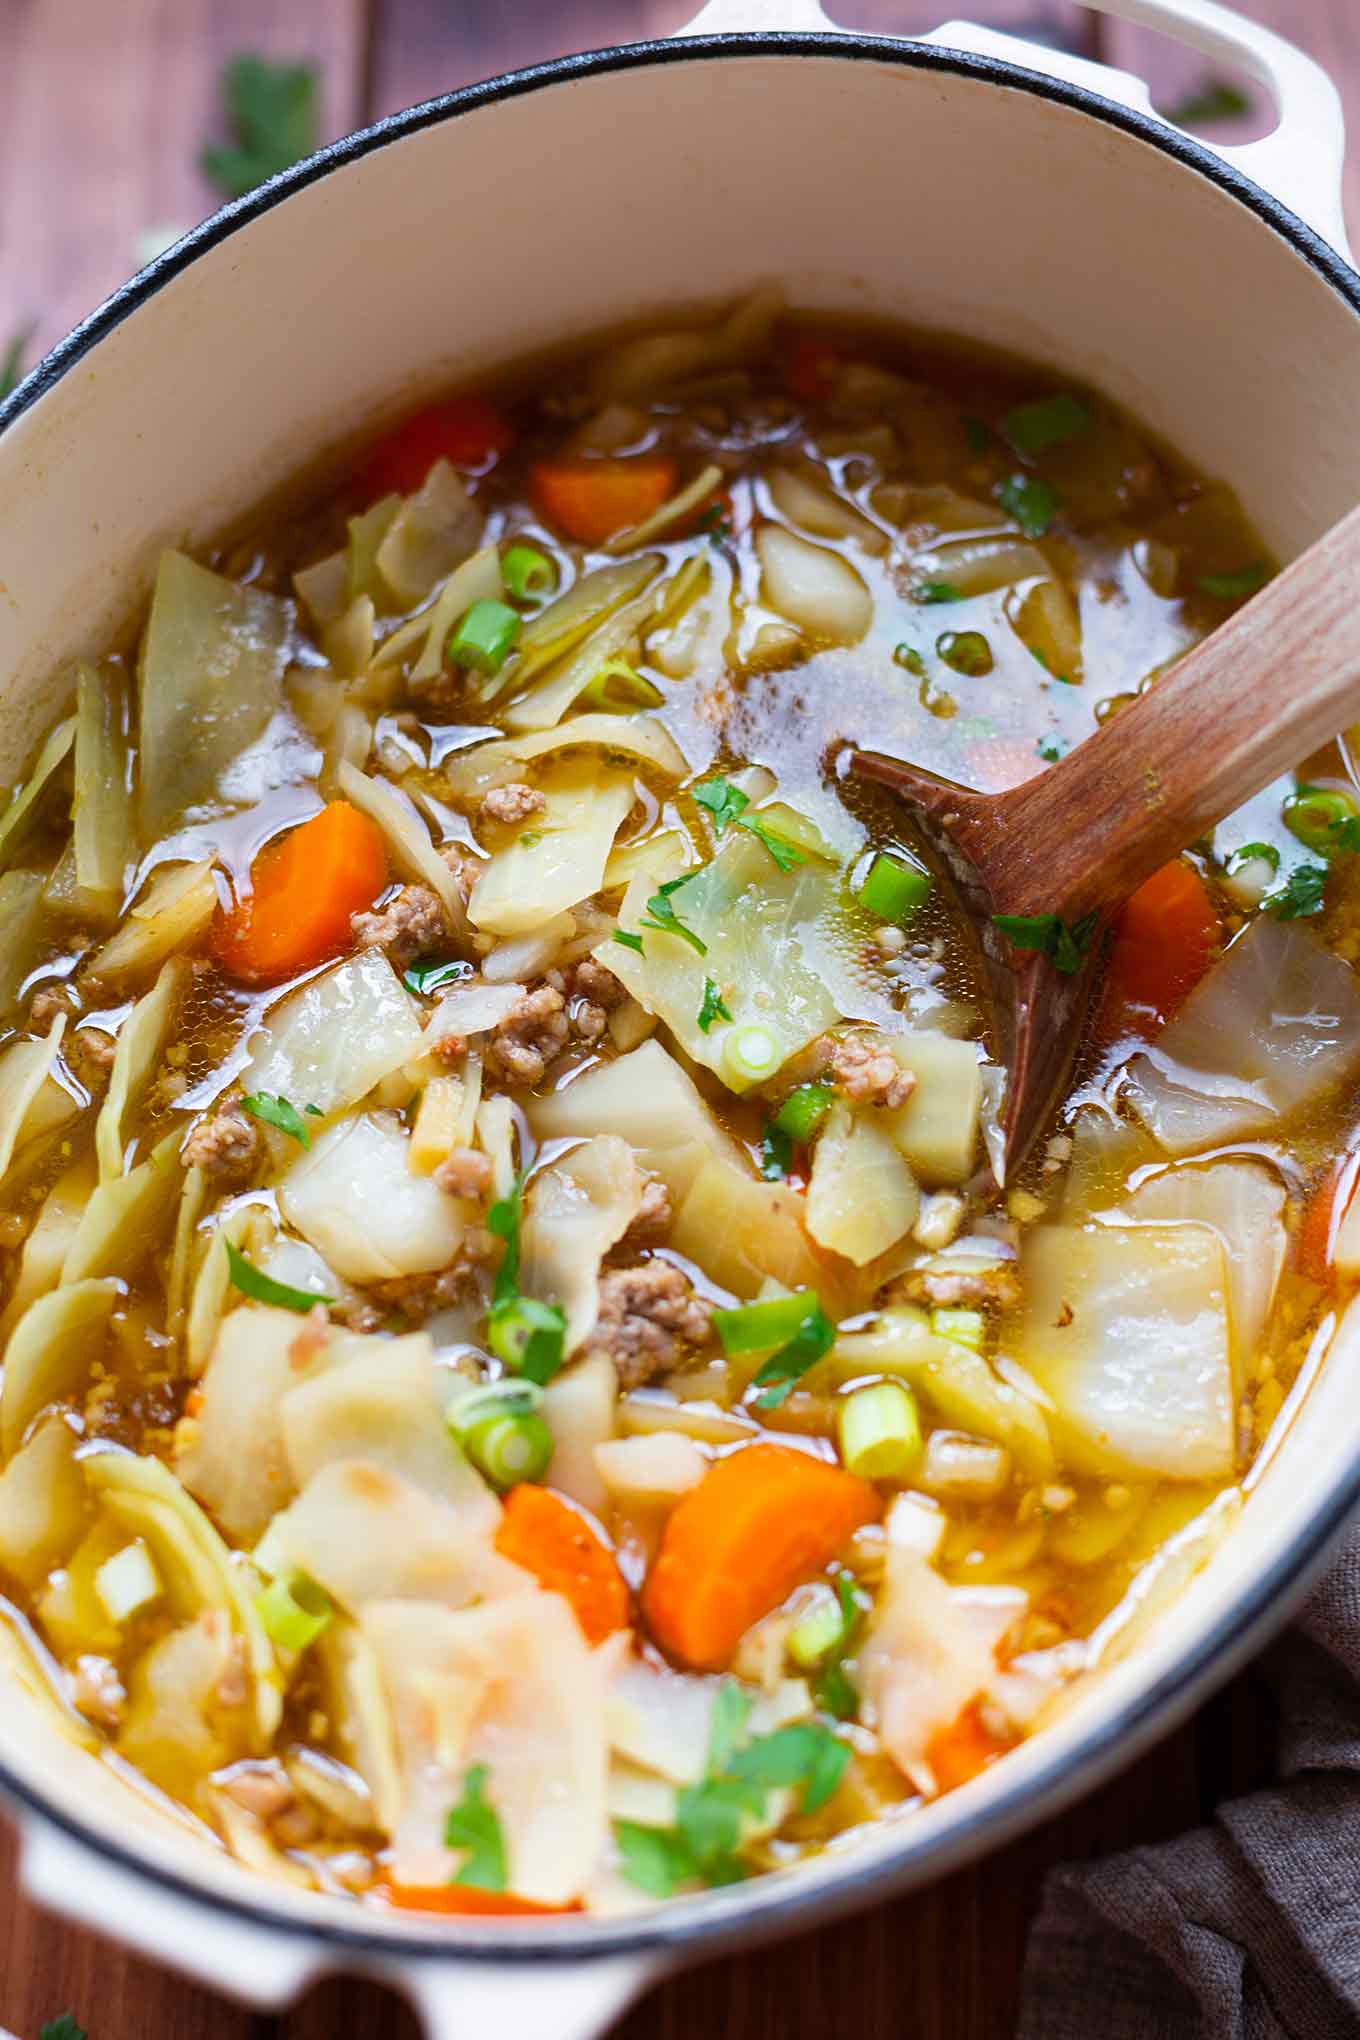 30-Minuten Frühlingsrollen-Suppe. Dieses schnelle Low Carb Rezept ist herzhaft, deftig und asiatisch gut! - Kochkarussell.com #frühlingsrollen #suppe #rezept #schnellundeinfach